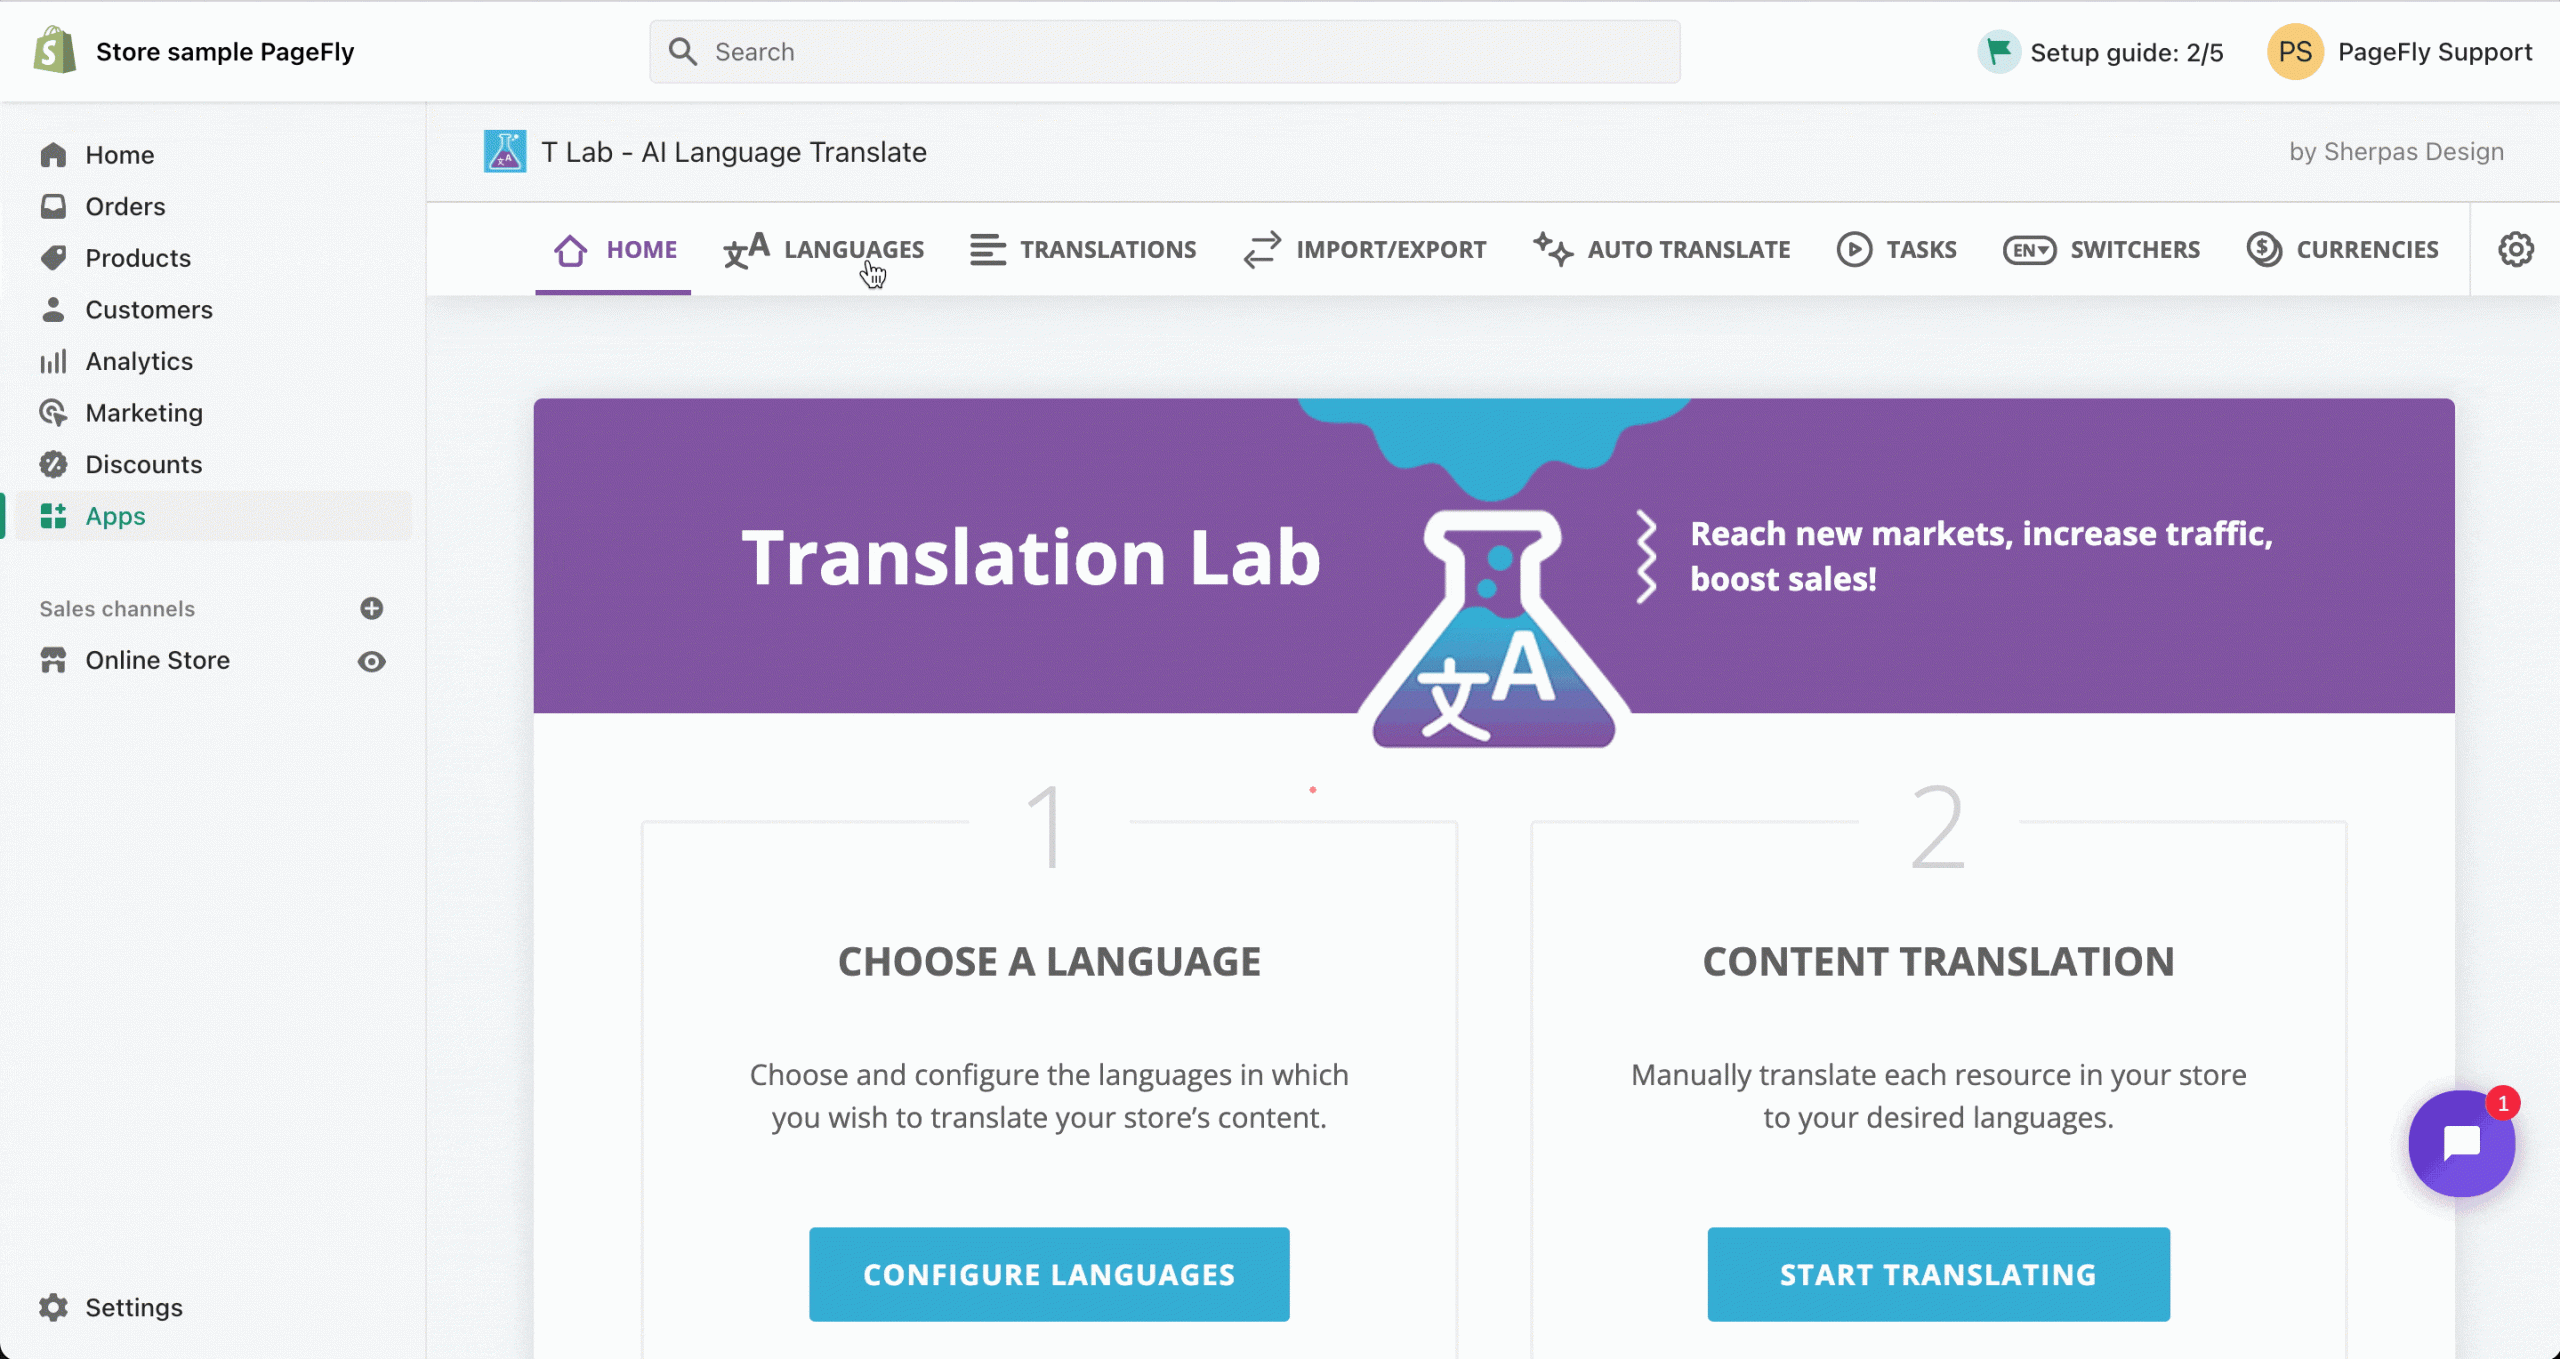 Comment utiliser T Lab pour traduire la page de PageFly